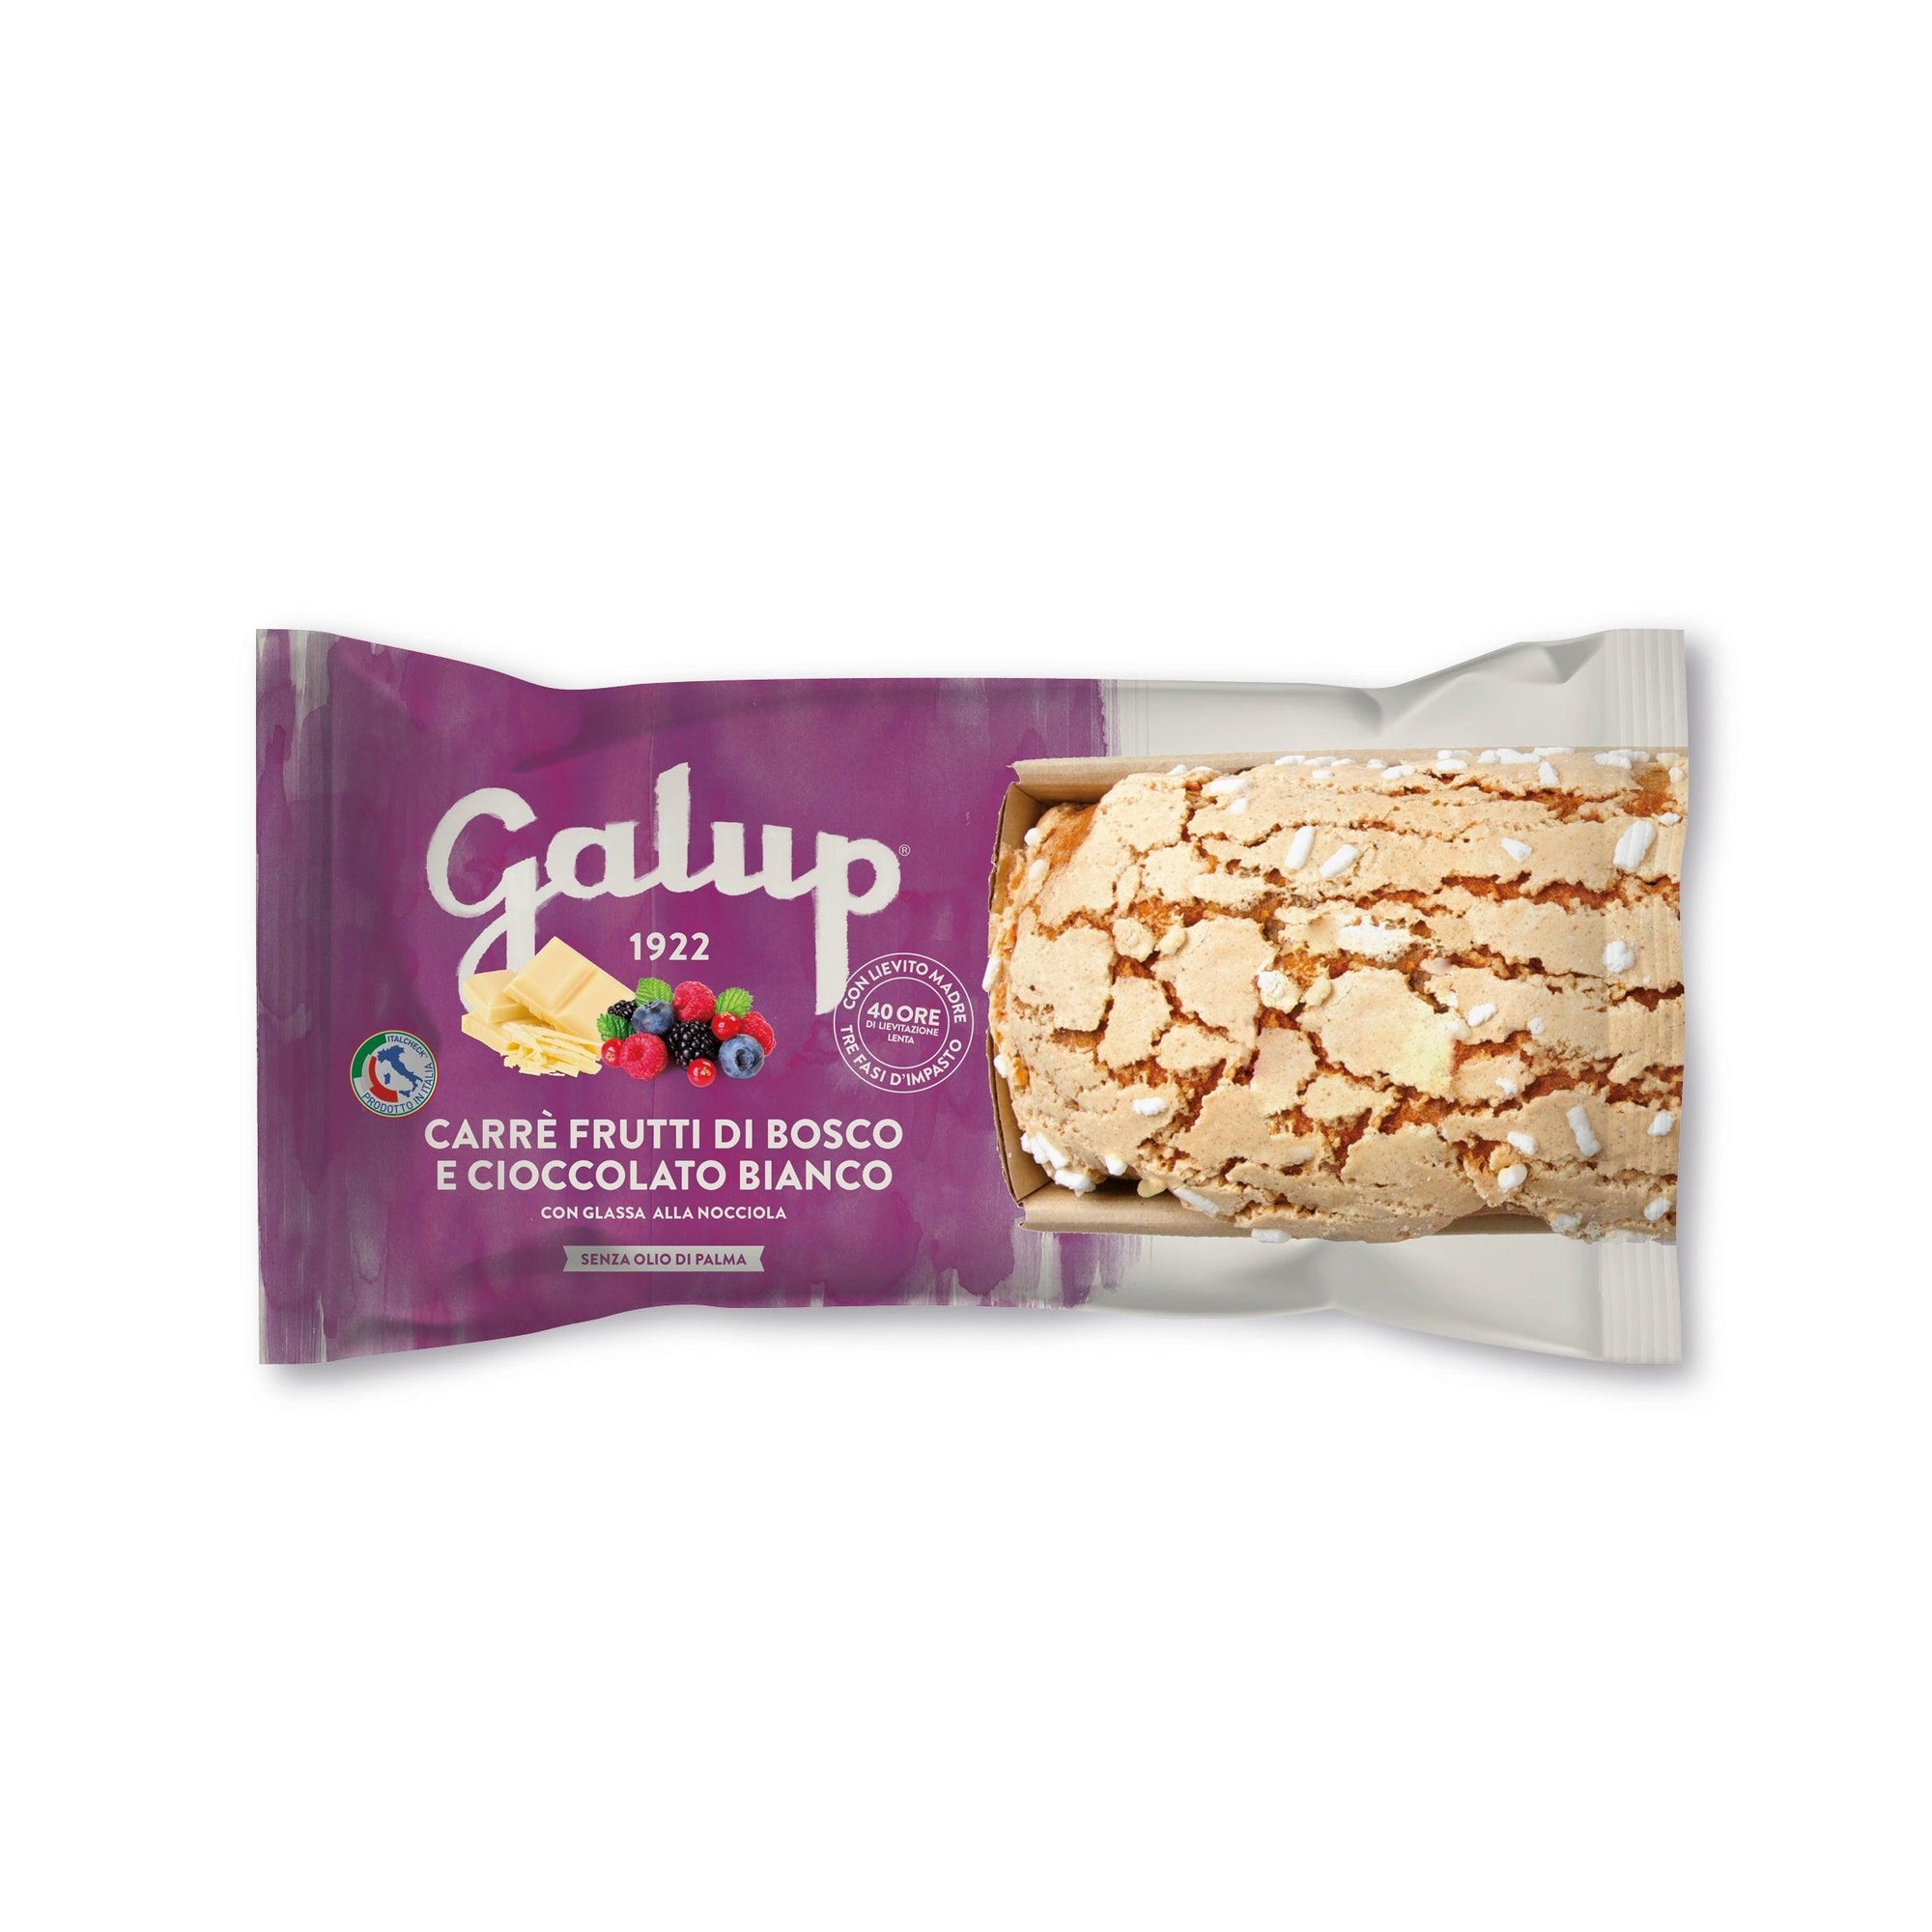 Carrè Galup ai frutti di bosco con cioccolato Bianco 400g - Galup® Store Ufficiale